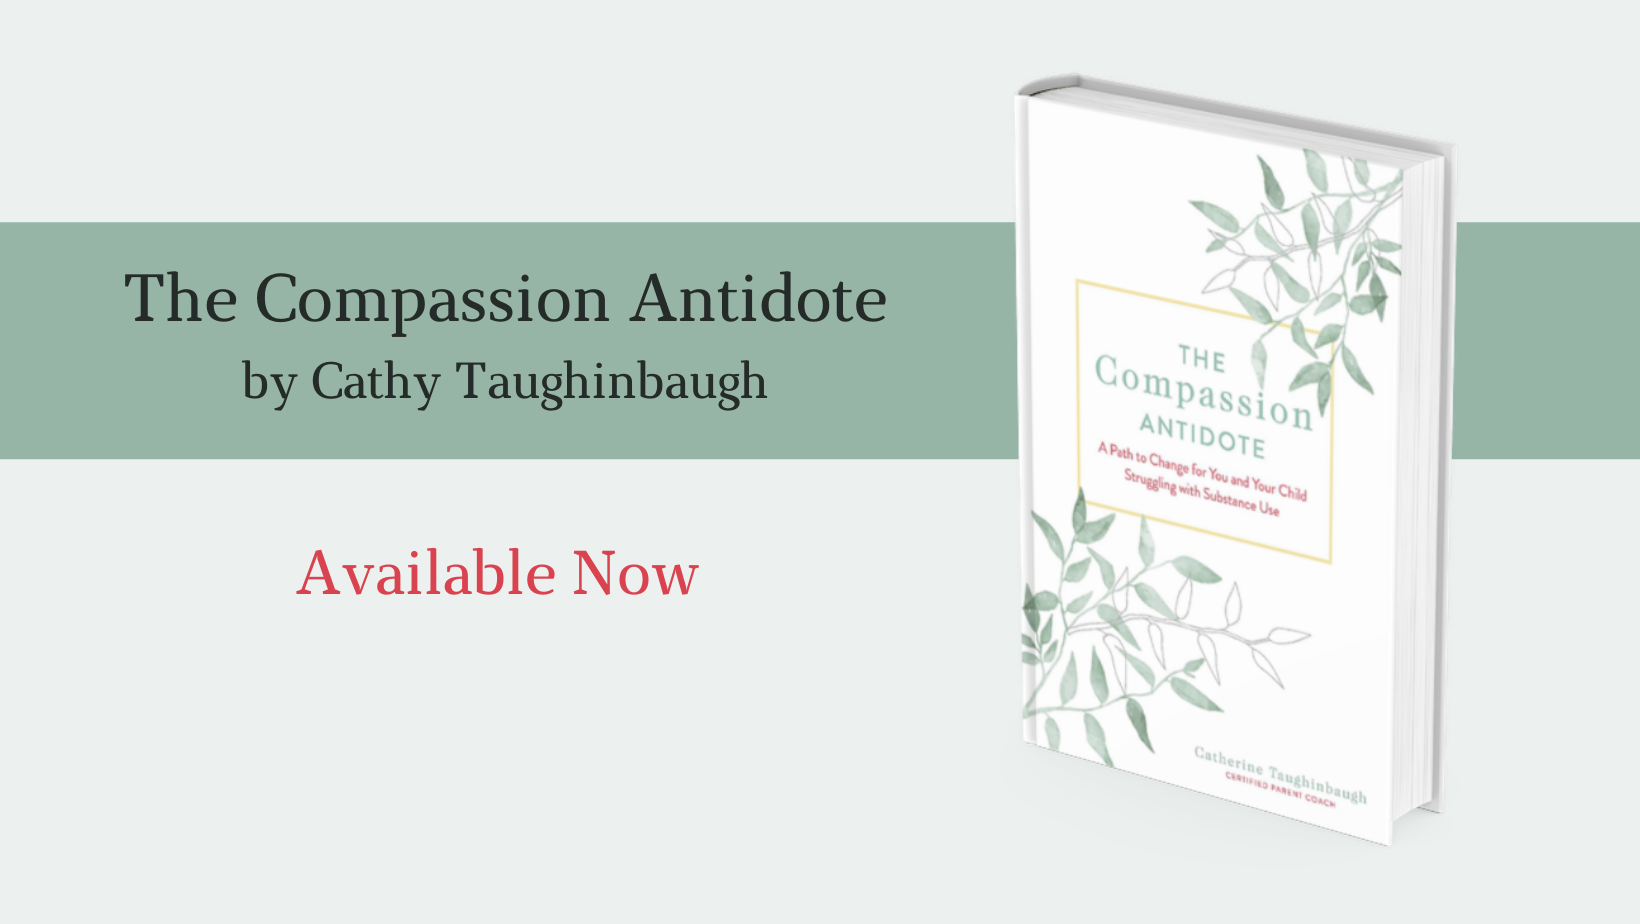 The Compassion Antidote